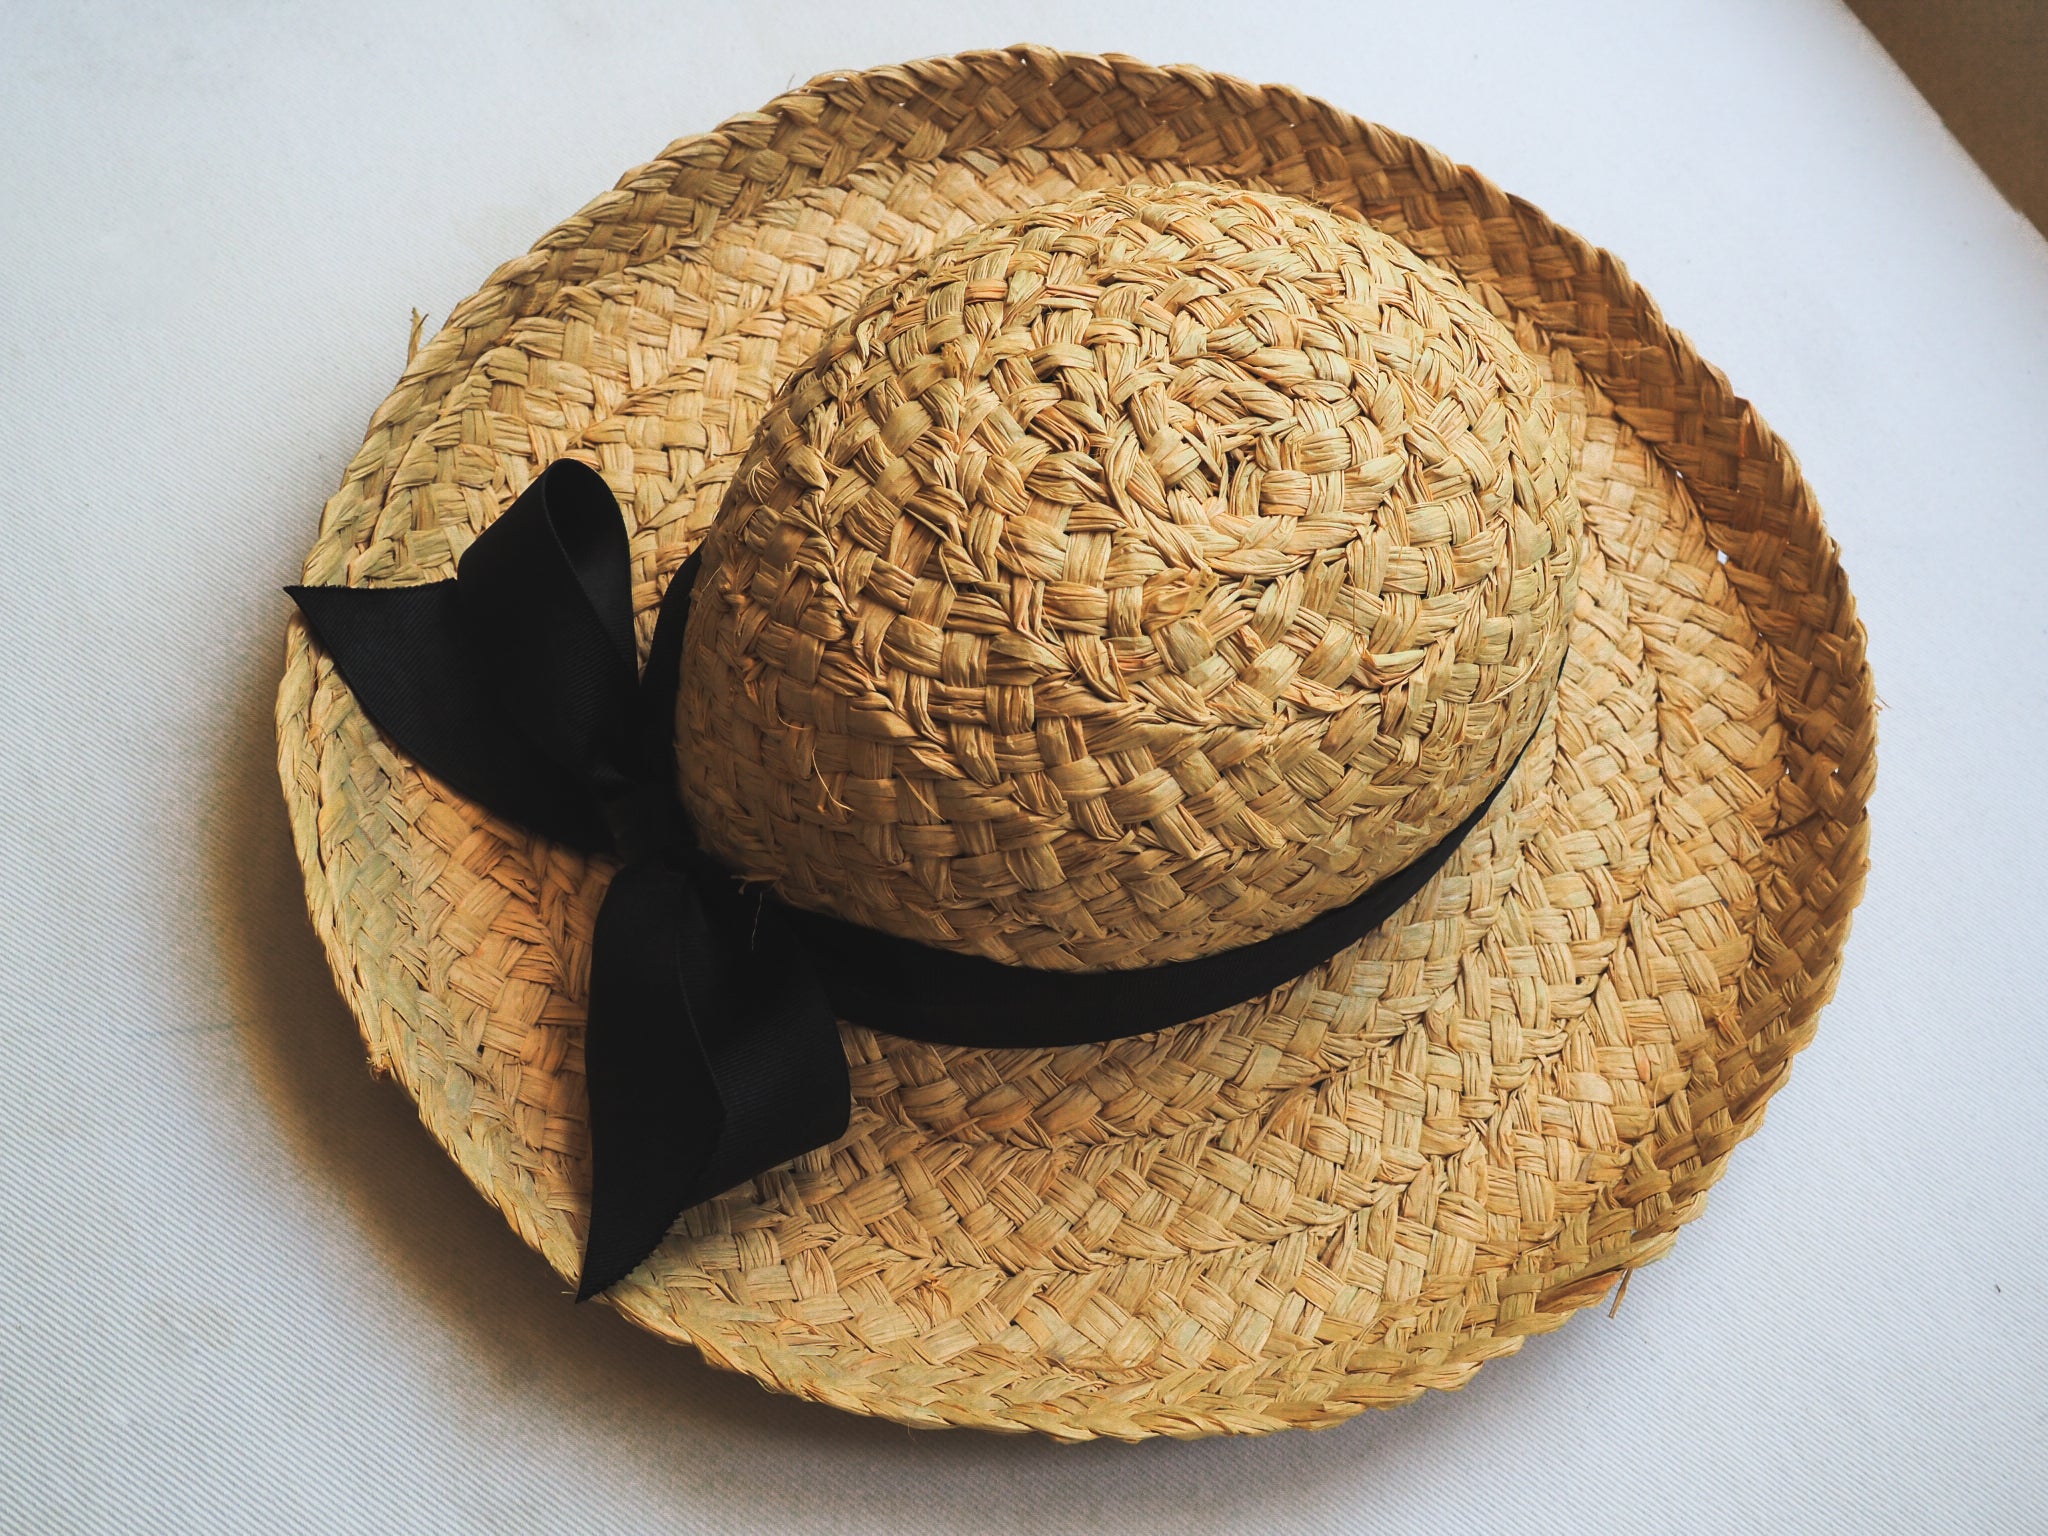 Vintage Round Straw Hat Curved Brim